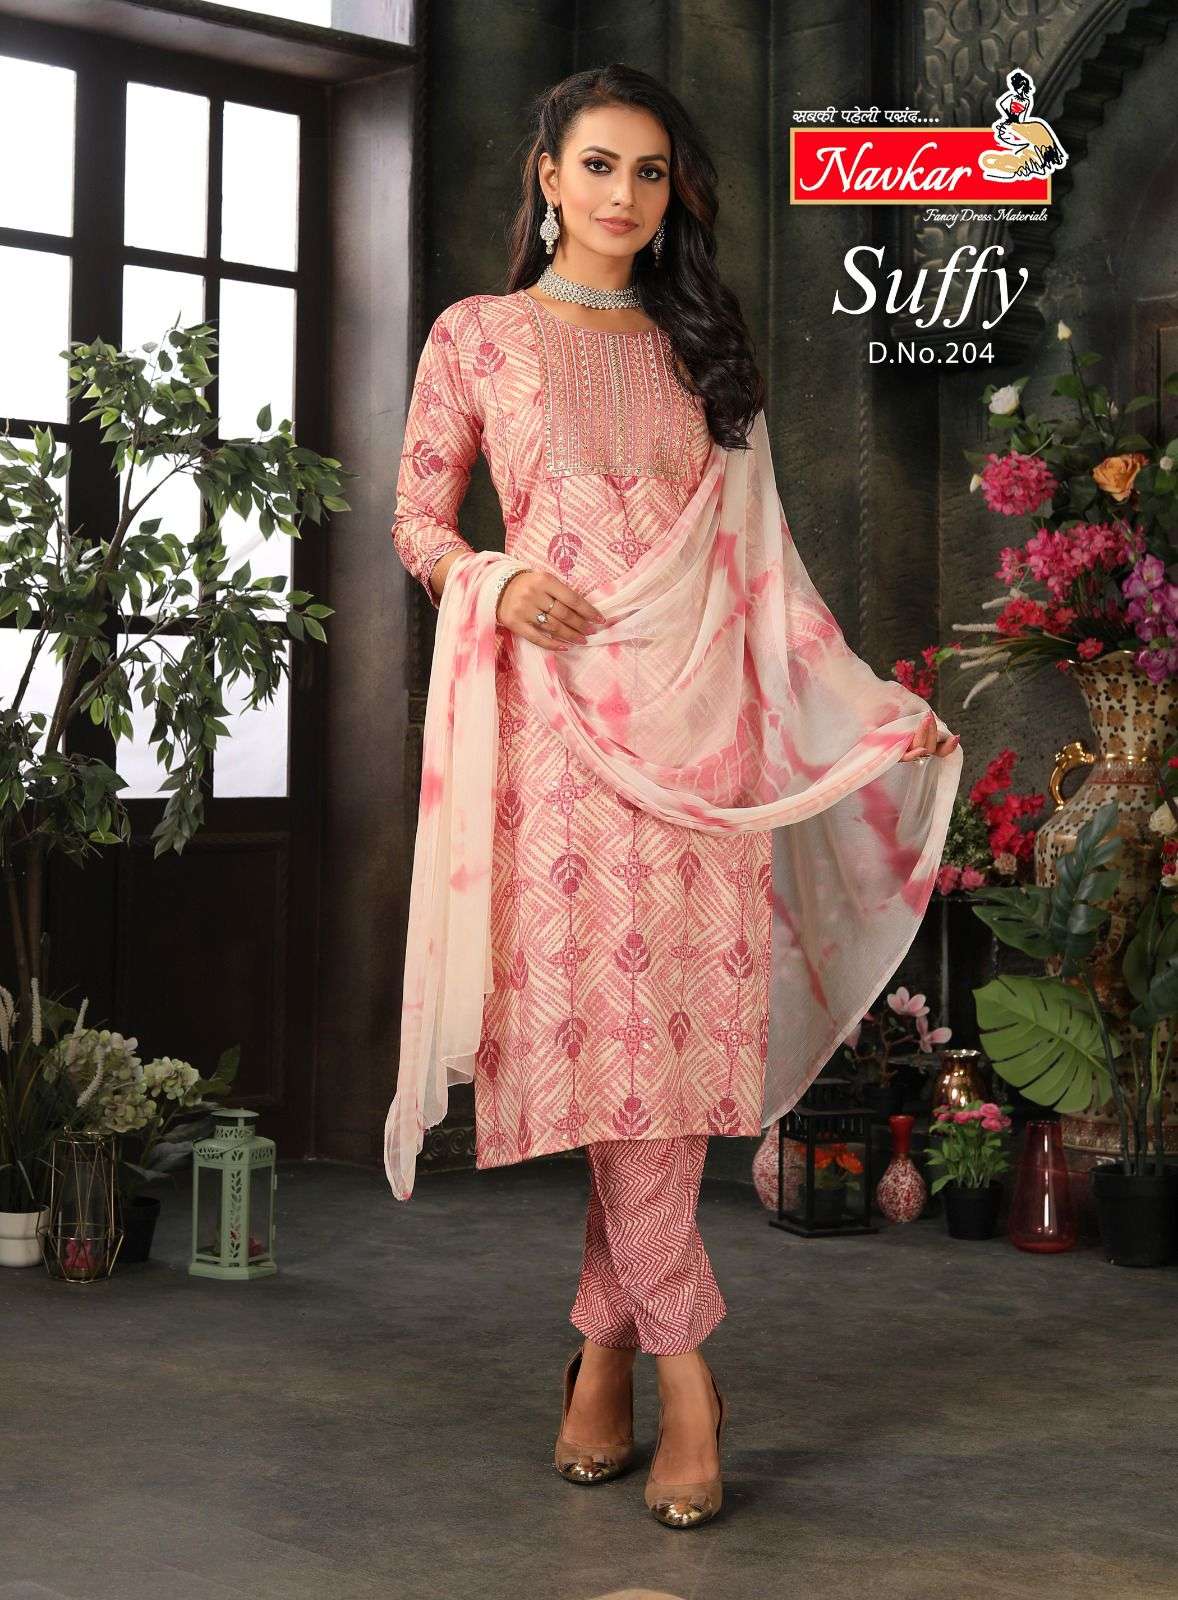 navkar suffy vol-2 201-208 series readymade designer dress for women online market surat